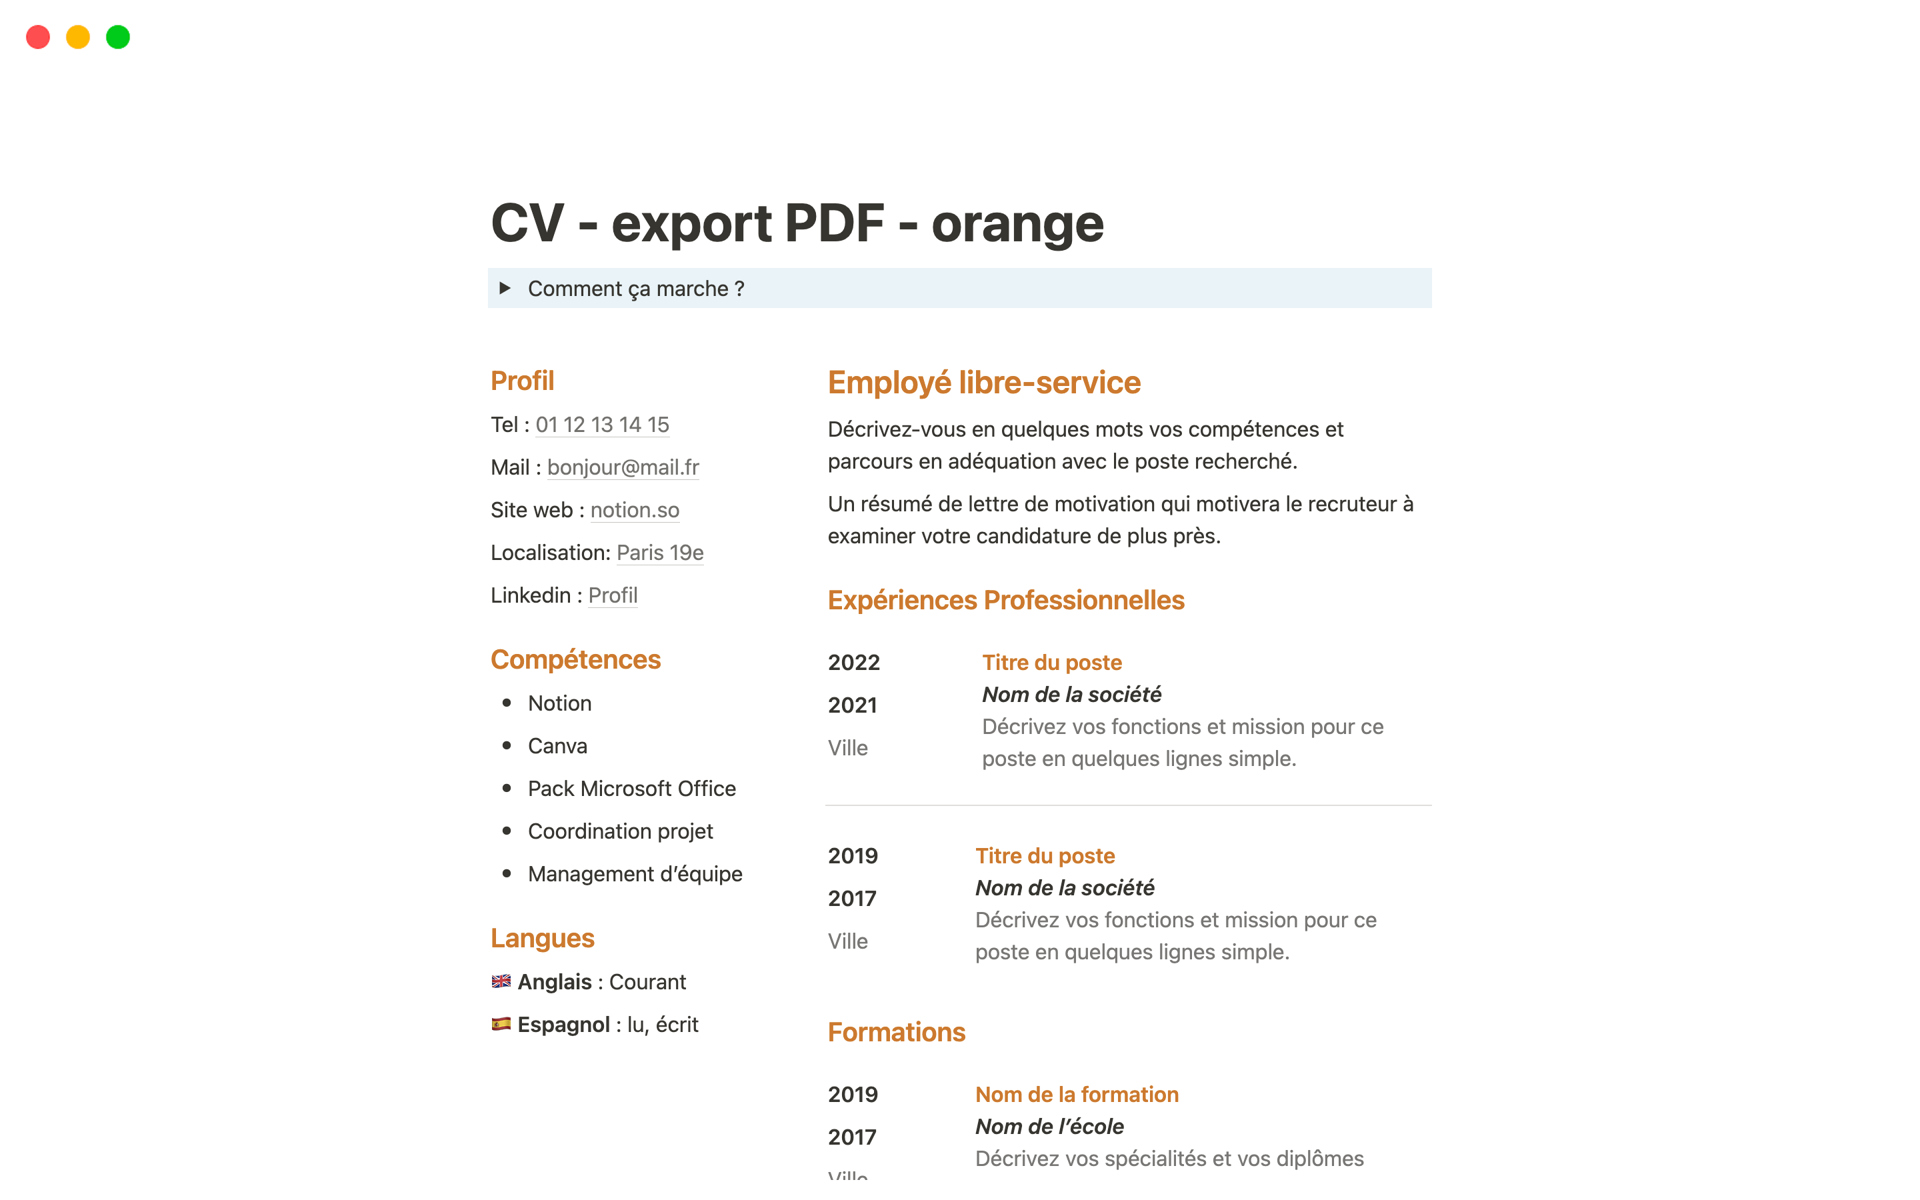 Vista previa de una plantilla para CV simple pour export PDF - orange